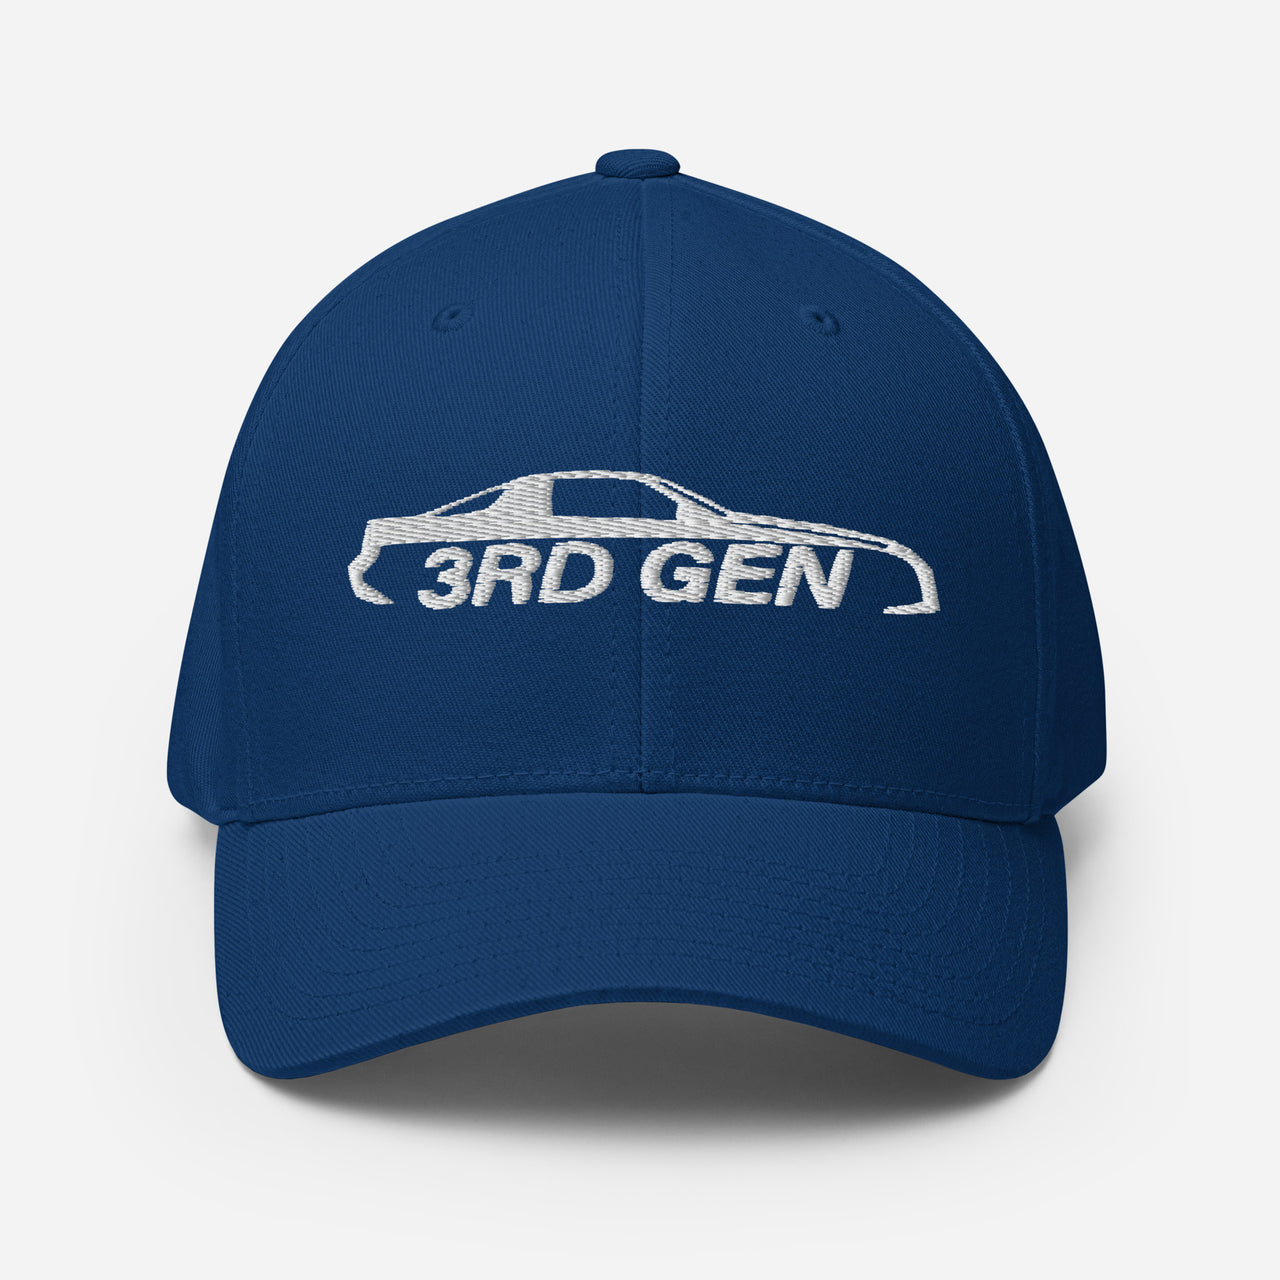 Third Gen Camaro Hat Flexfit Cap in blue